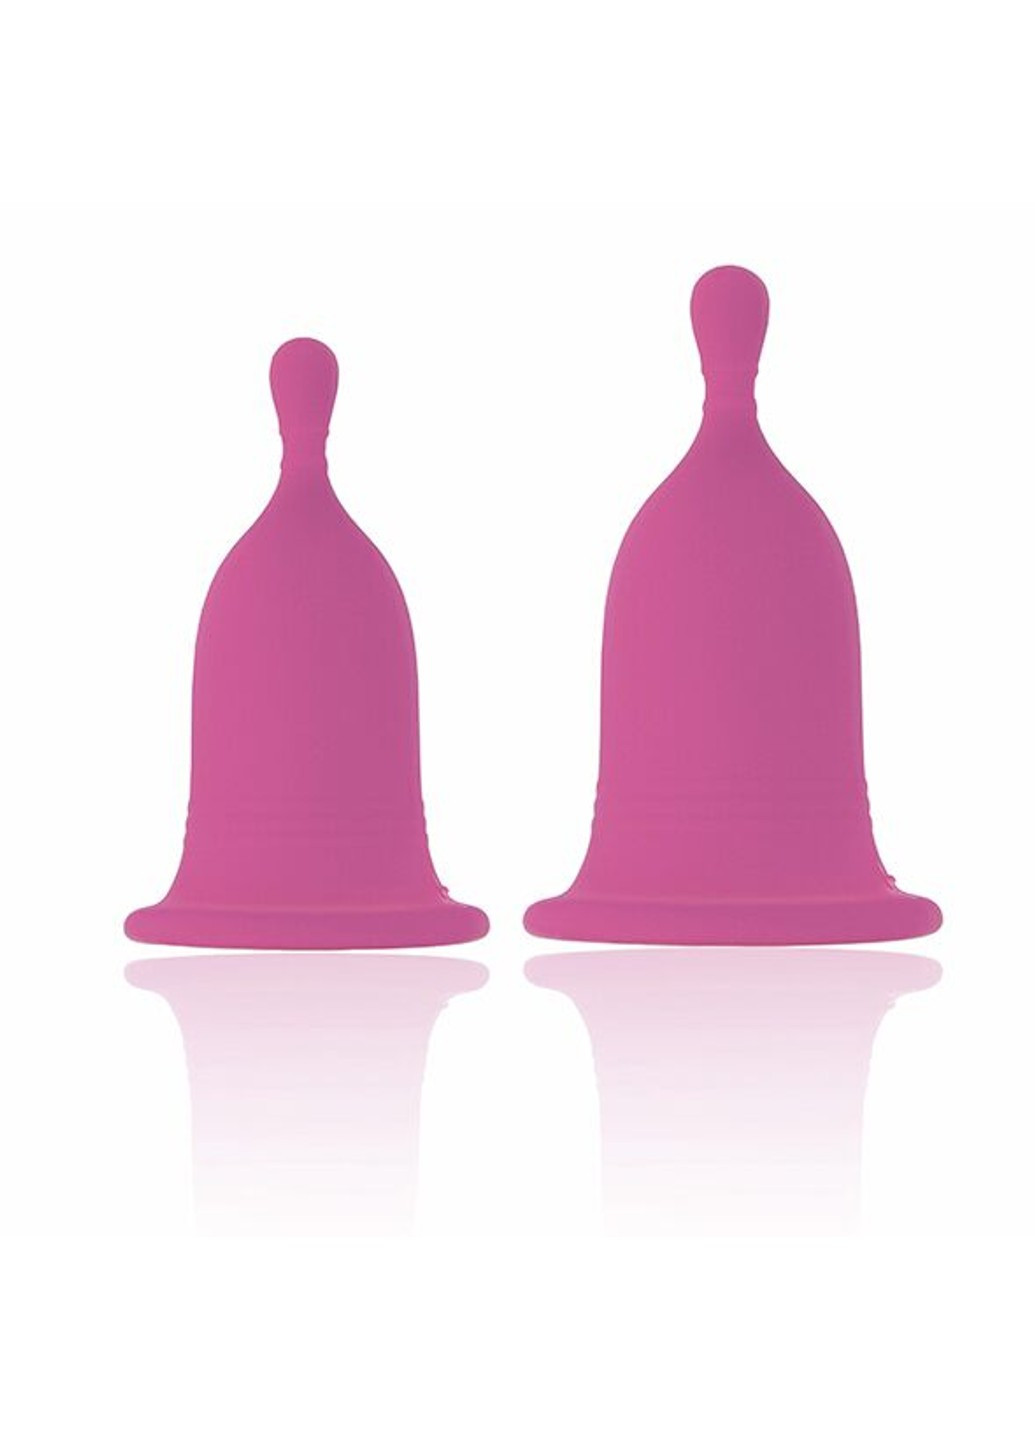 Менструальні чаші Femcare - Cherry Cup RIANNE S (255073614)